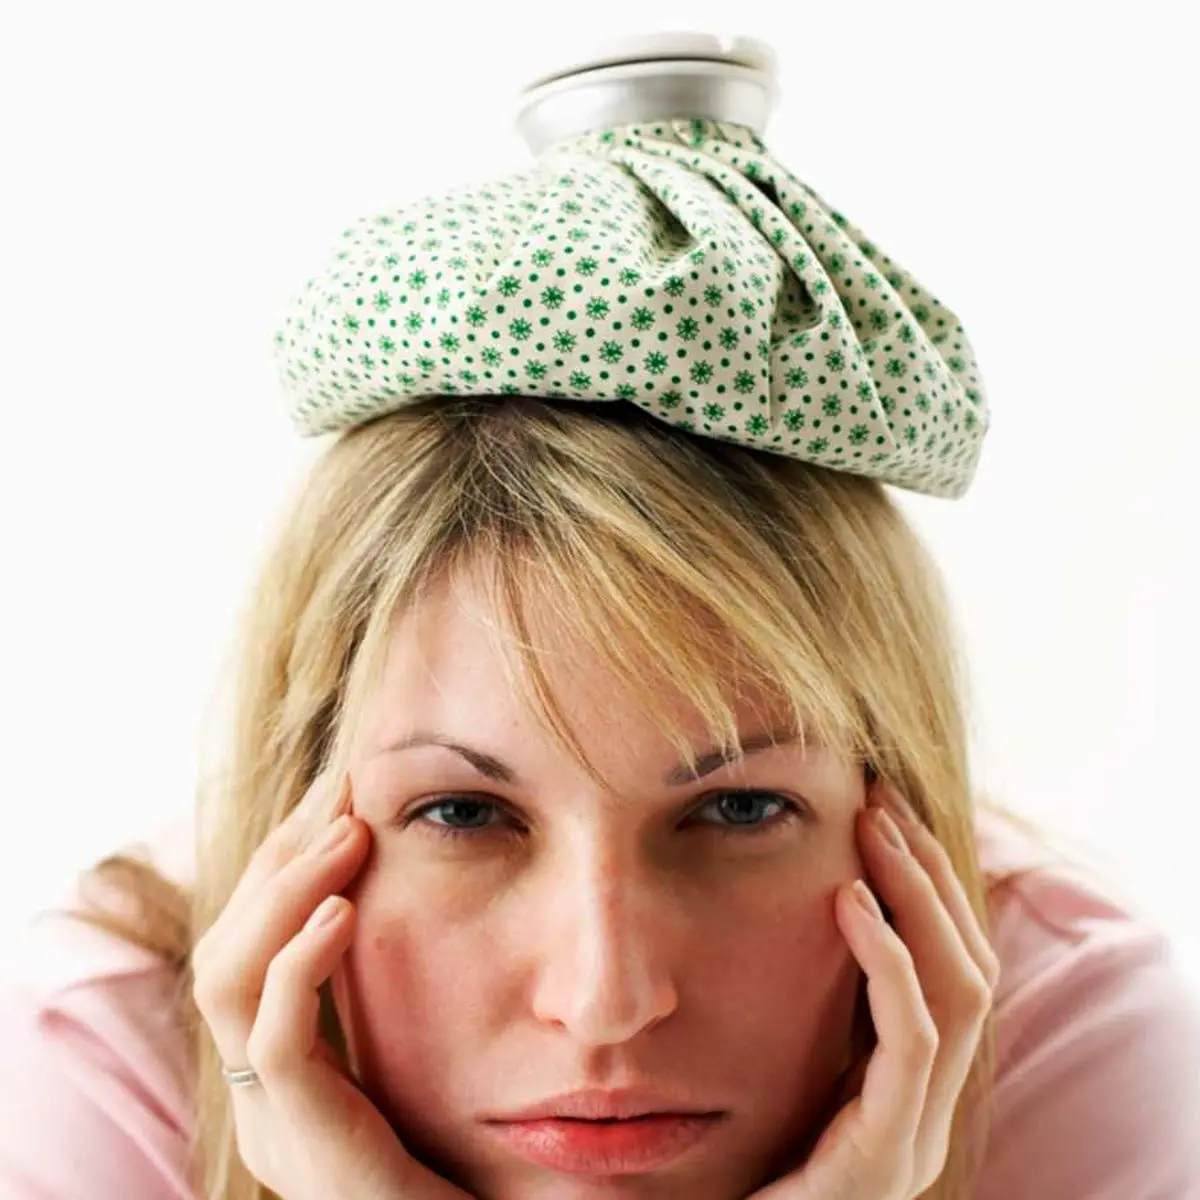 درمان سردرد؛ راهکارهایی ساده و راحت برای درمان سردرد در خانه!